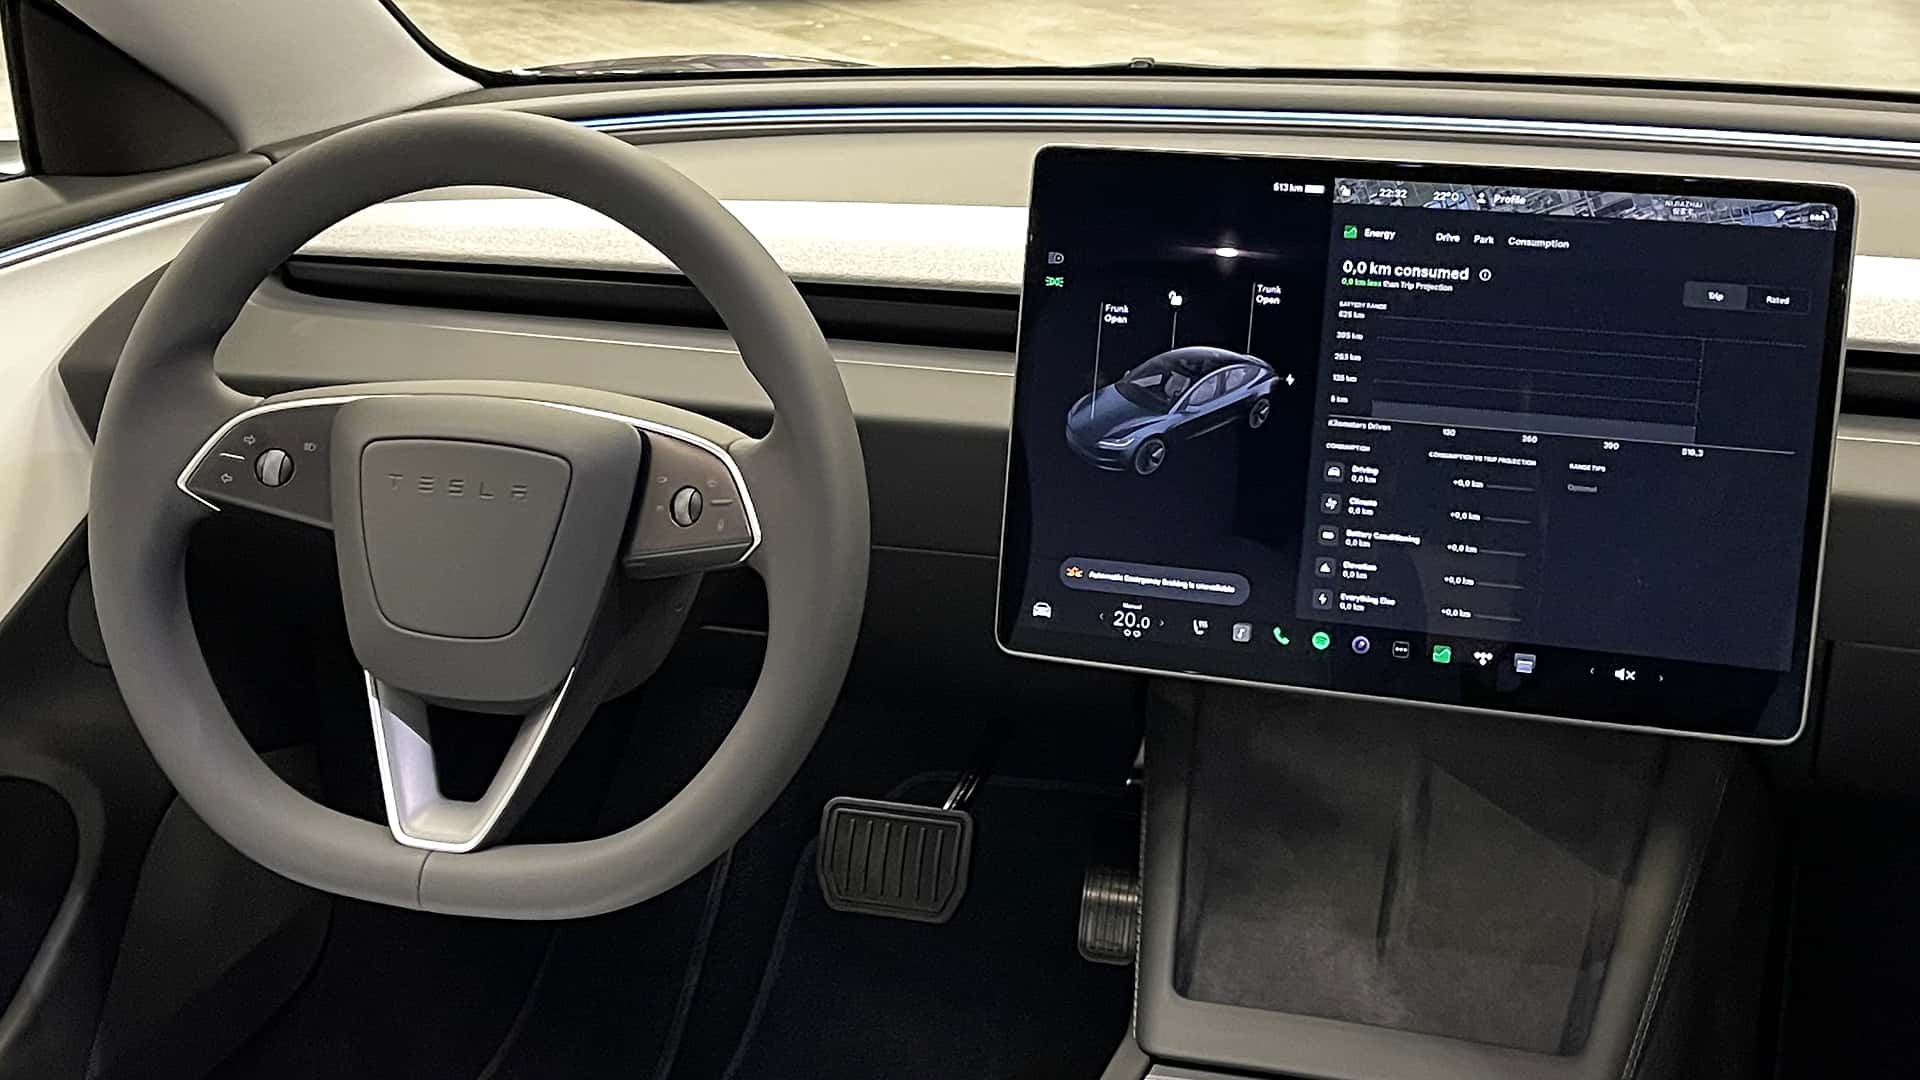 Обновленная Tesla Model 3 Highland выходит на рынок